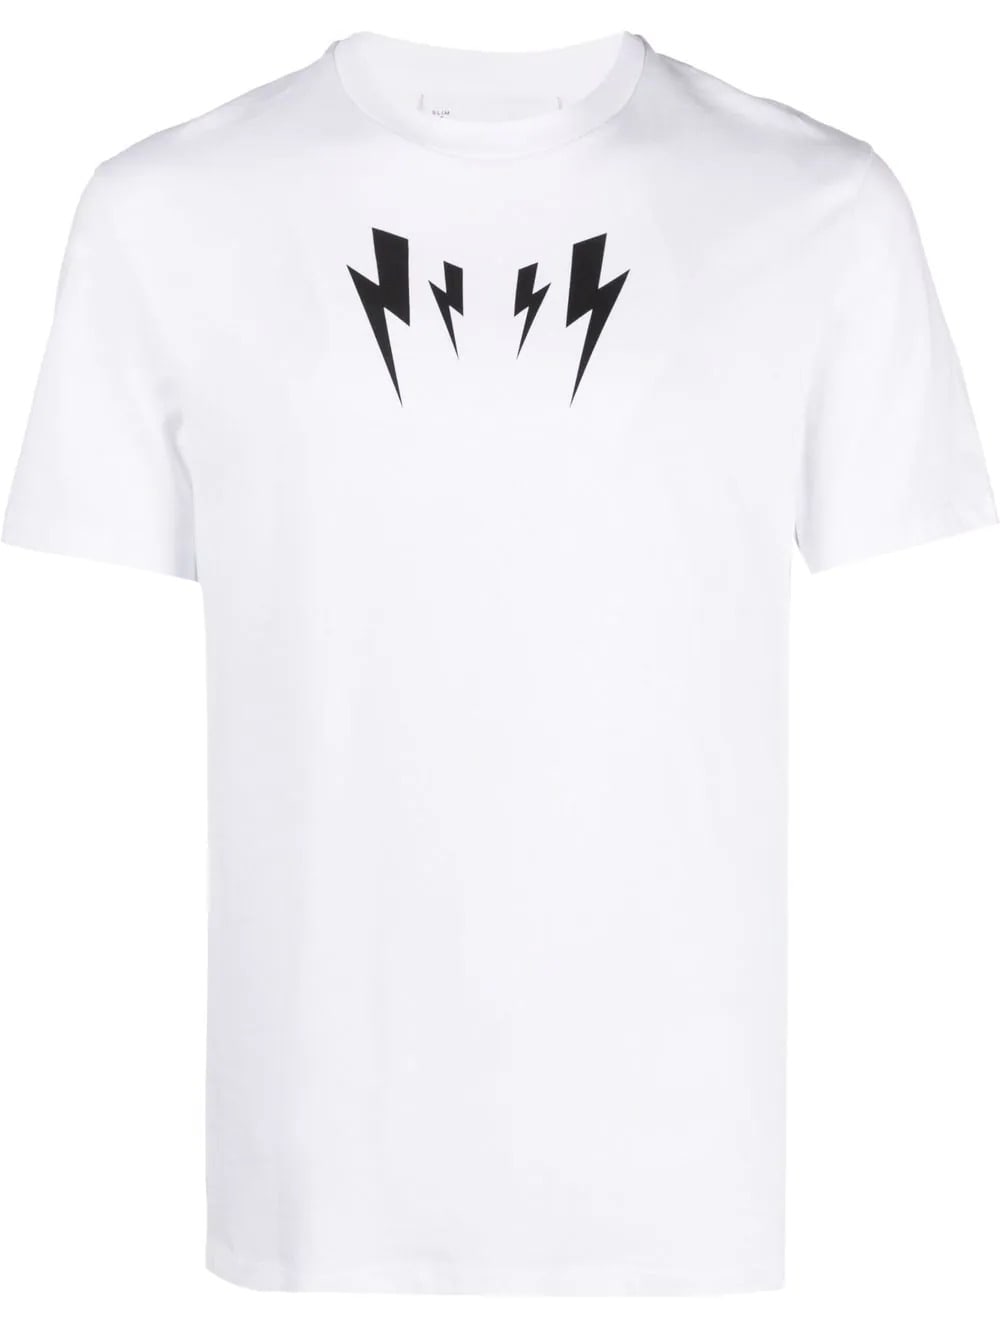 Neil Barrett Man White mirrored Thunderbolt T-shirt